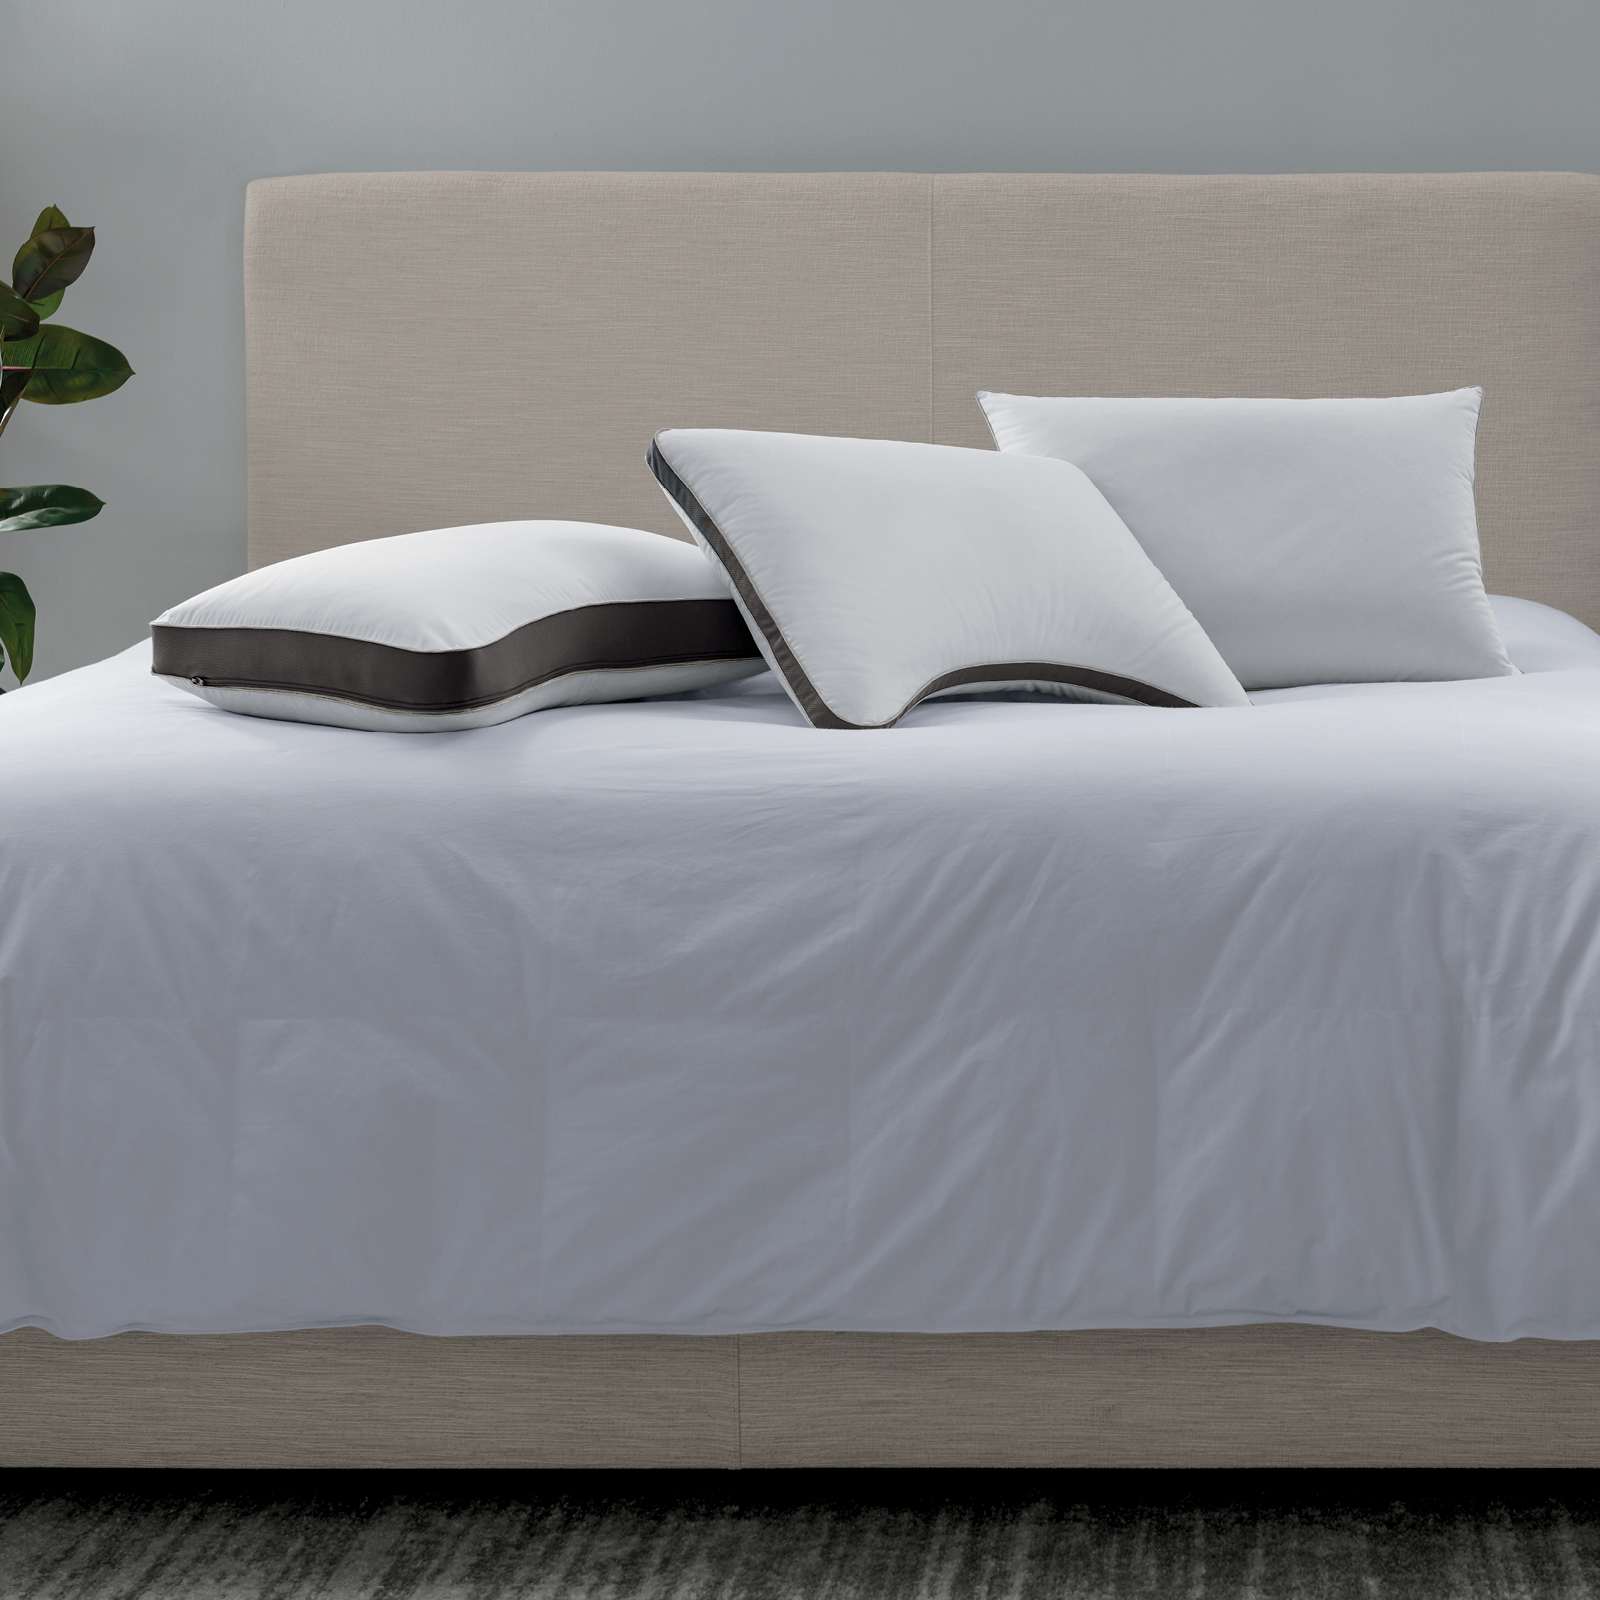 NaturalFit™ pillow